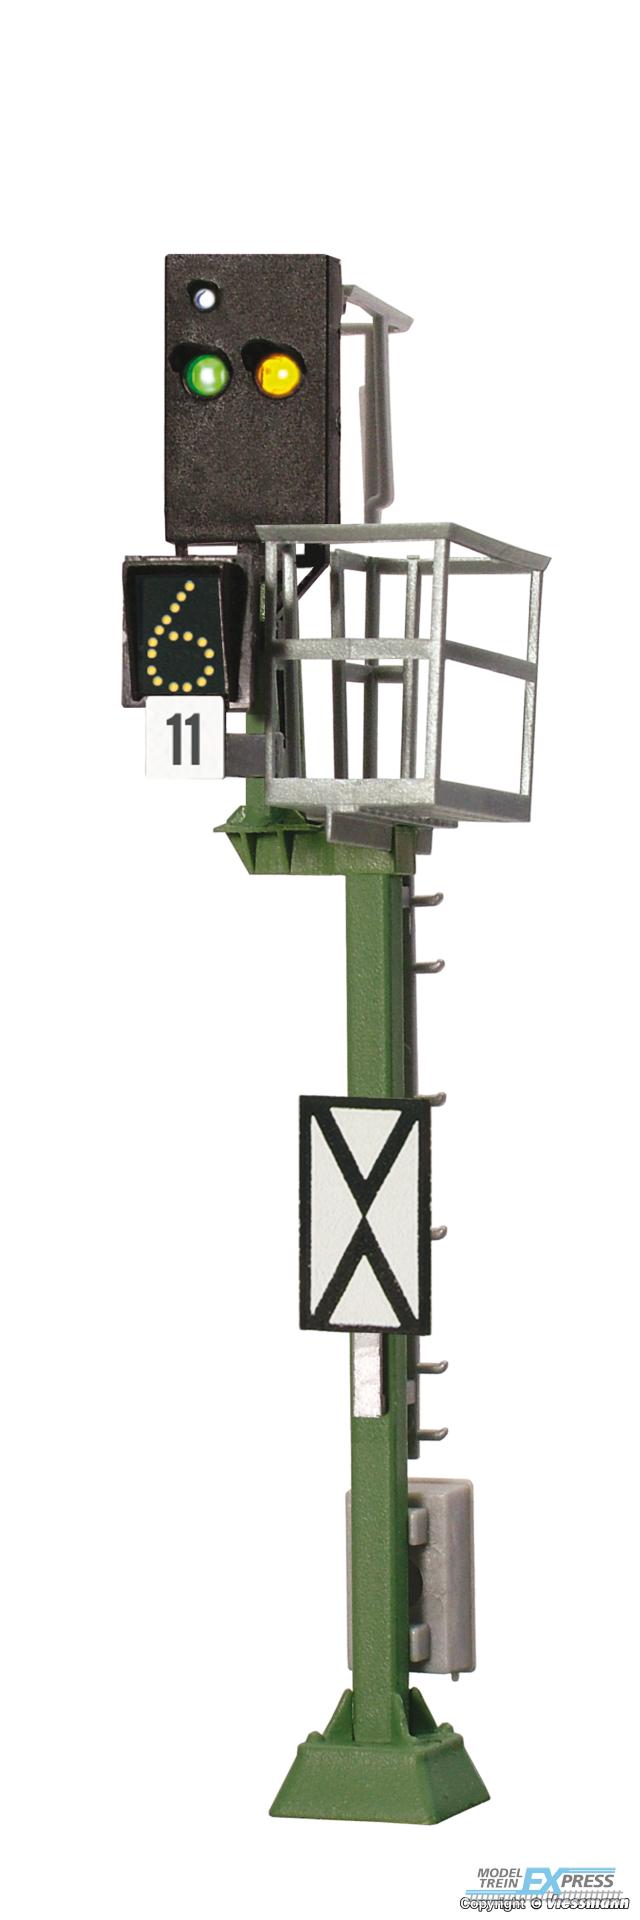 Viessmann 4040 H0 Ks-Vorsignal mit Multiplex-Technologie